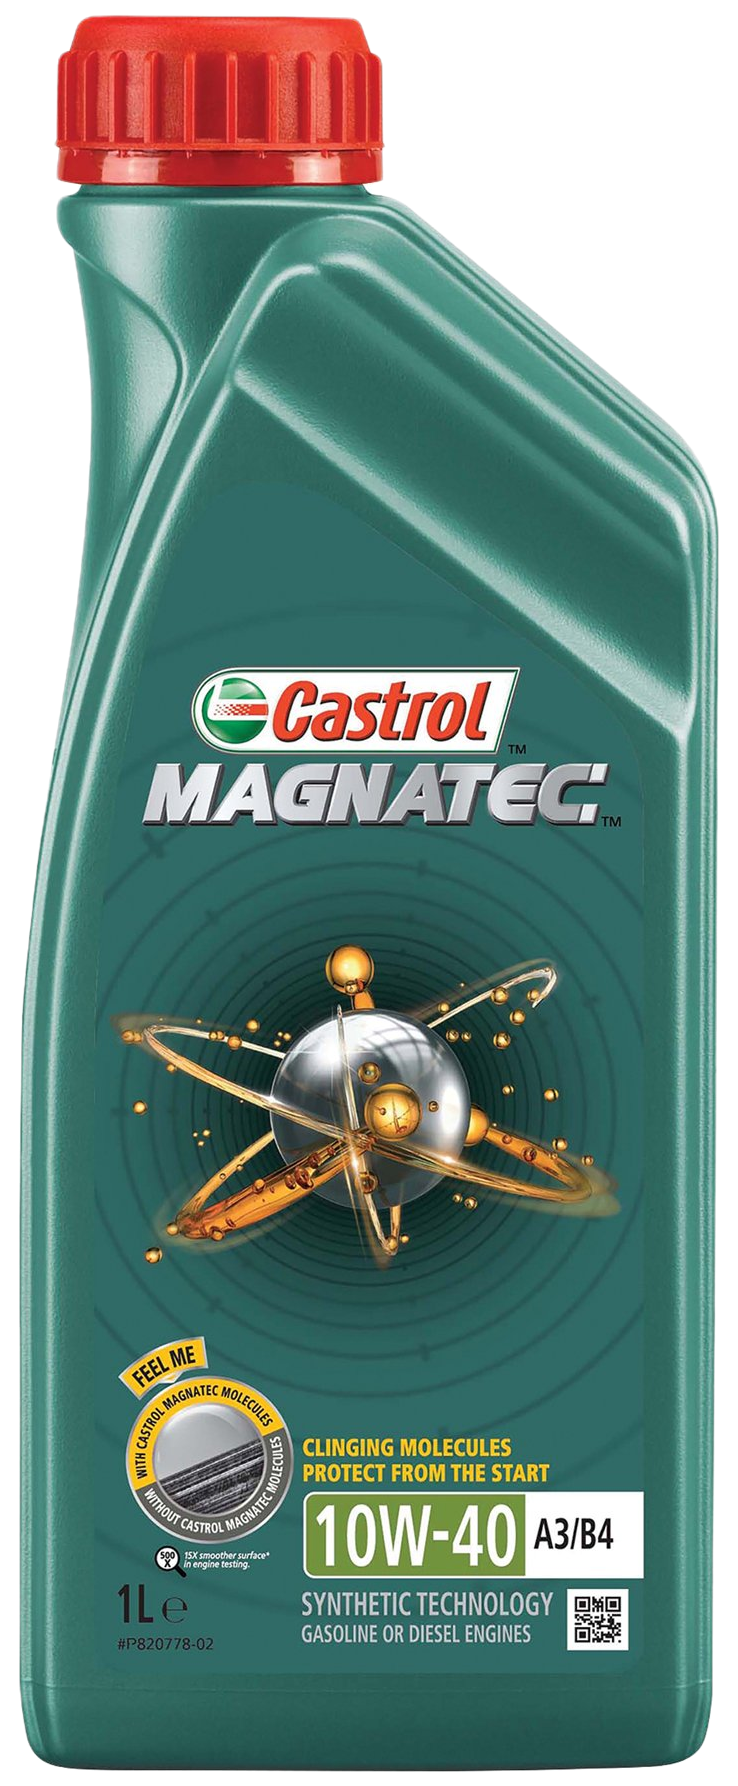 Castrol Magnatec 10W-40 A3/B4, 1 lt